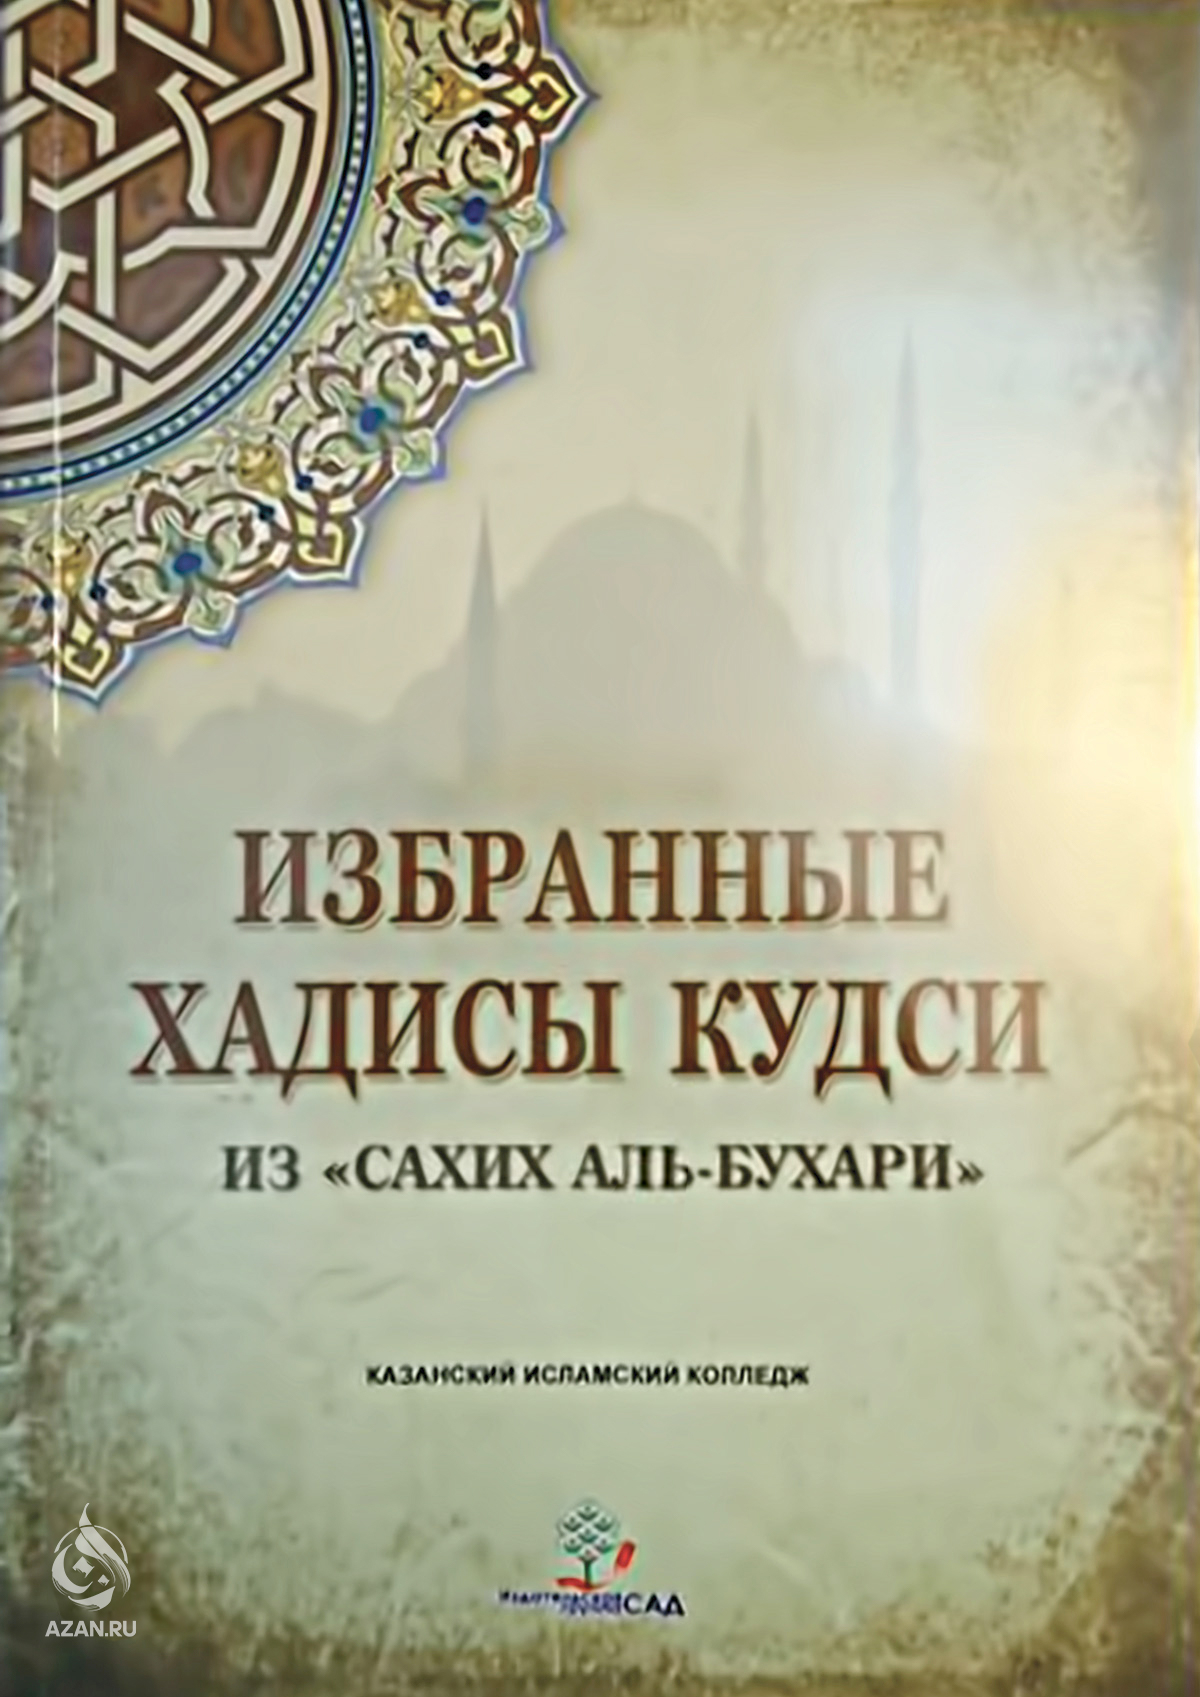 Книга хадисов Аль Бухари. Хадис Кудси Аль Бухари. Избранные хадисы Сахих Аль Бухари. Аль бухари купить